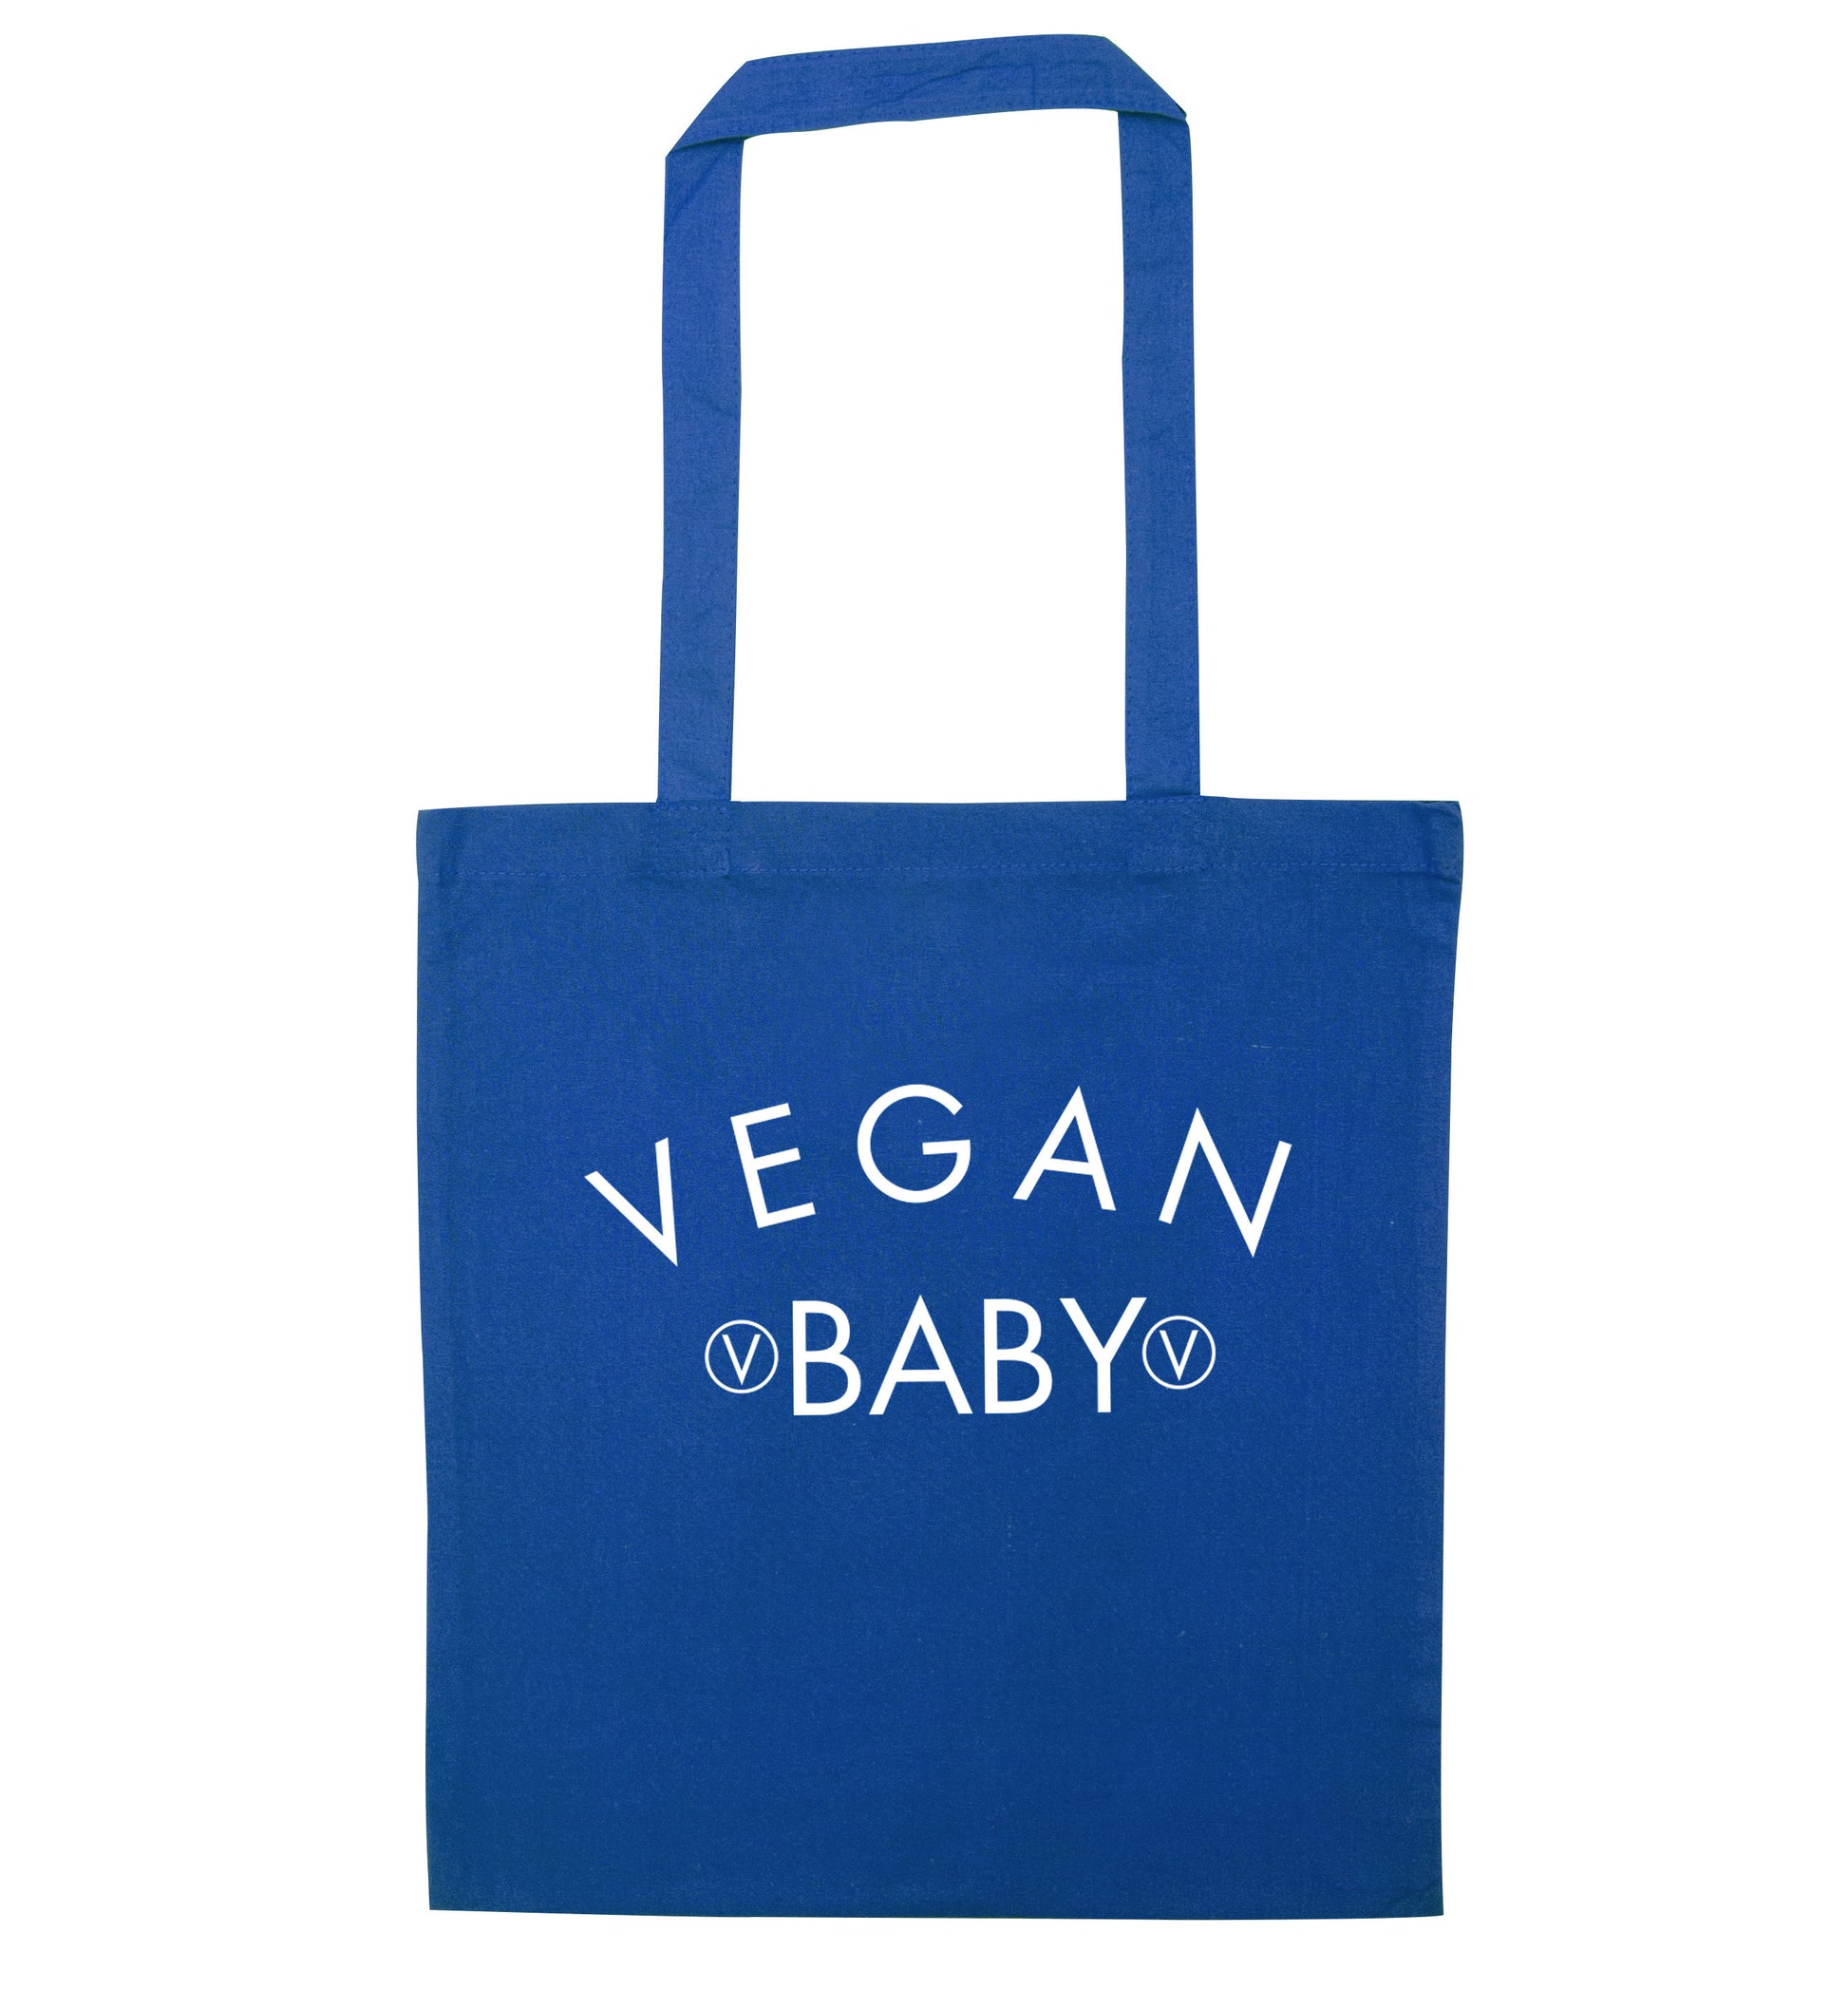 Vegan baby blue tote bag